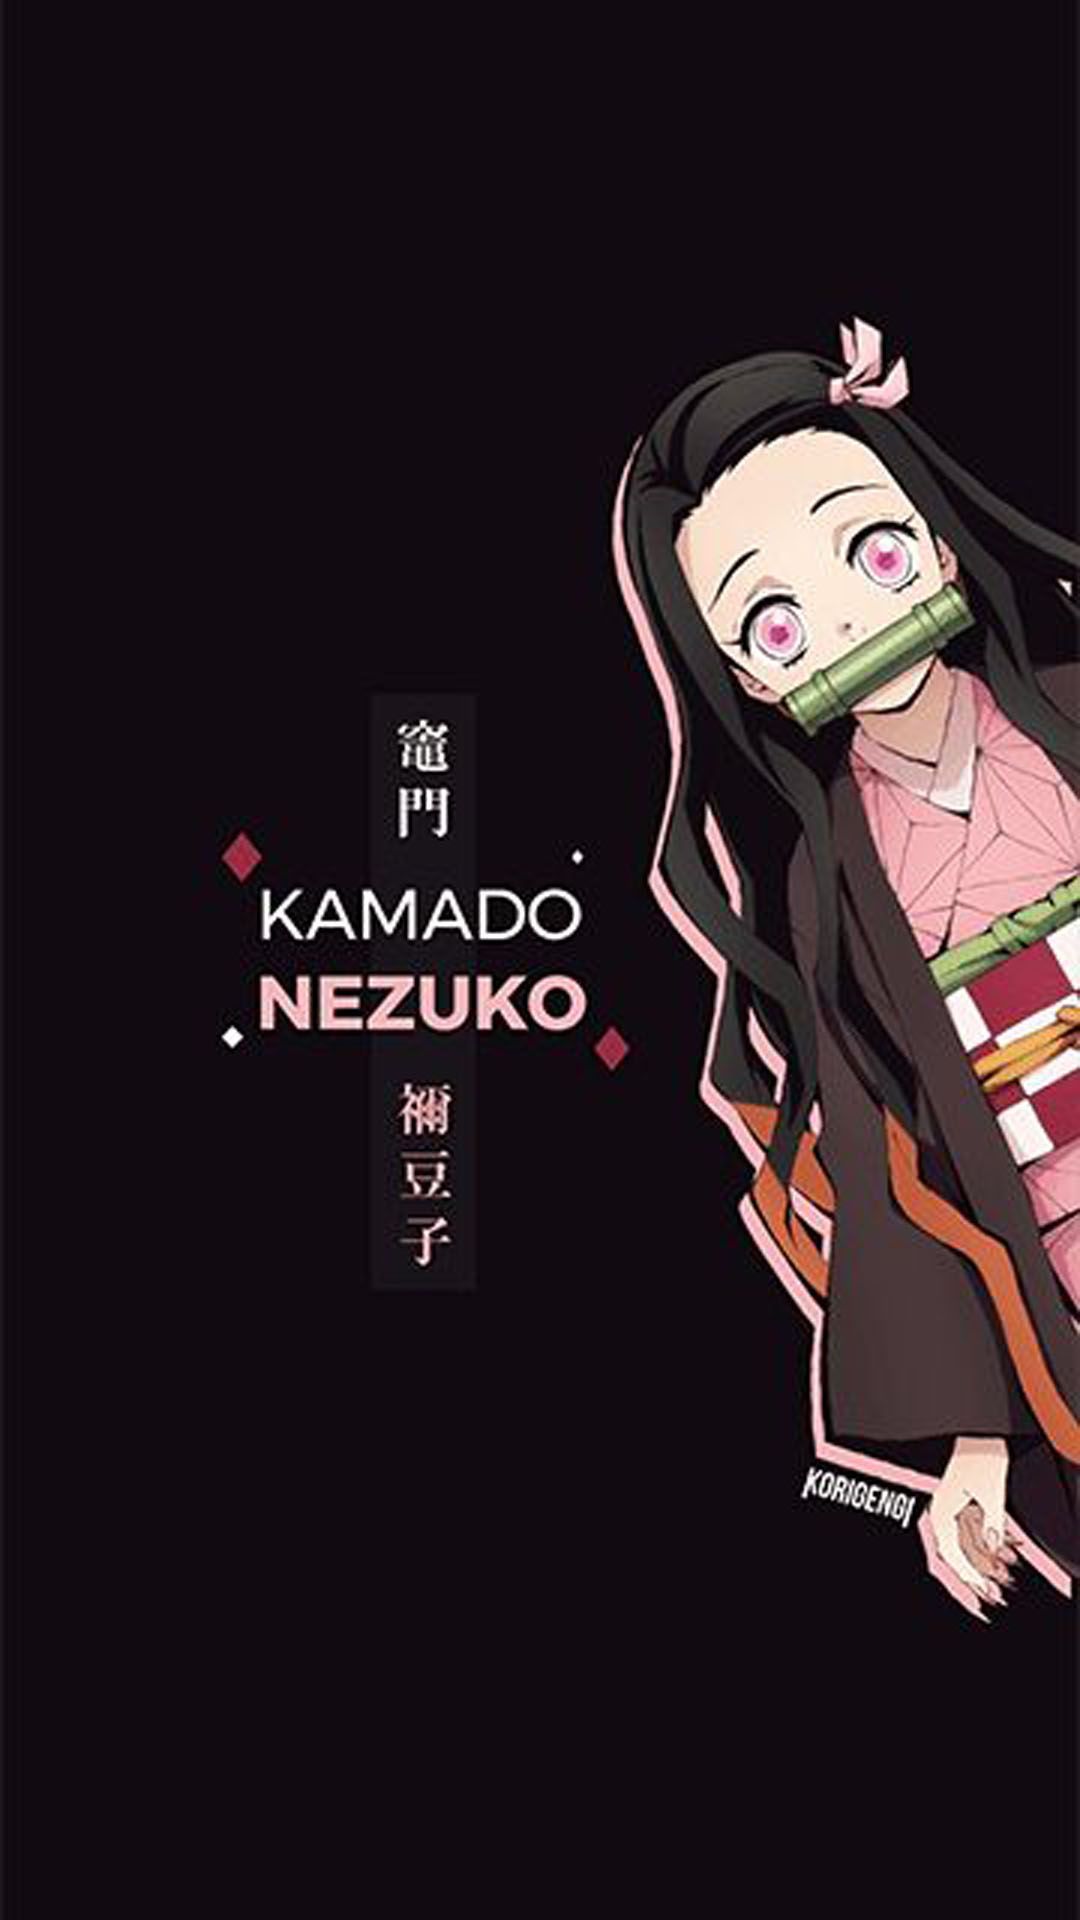 HD Wallpaper for mobile of Kimetsu no Yaiba. Seni anime